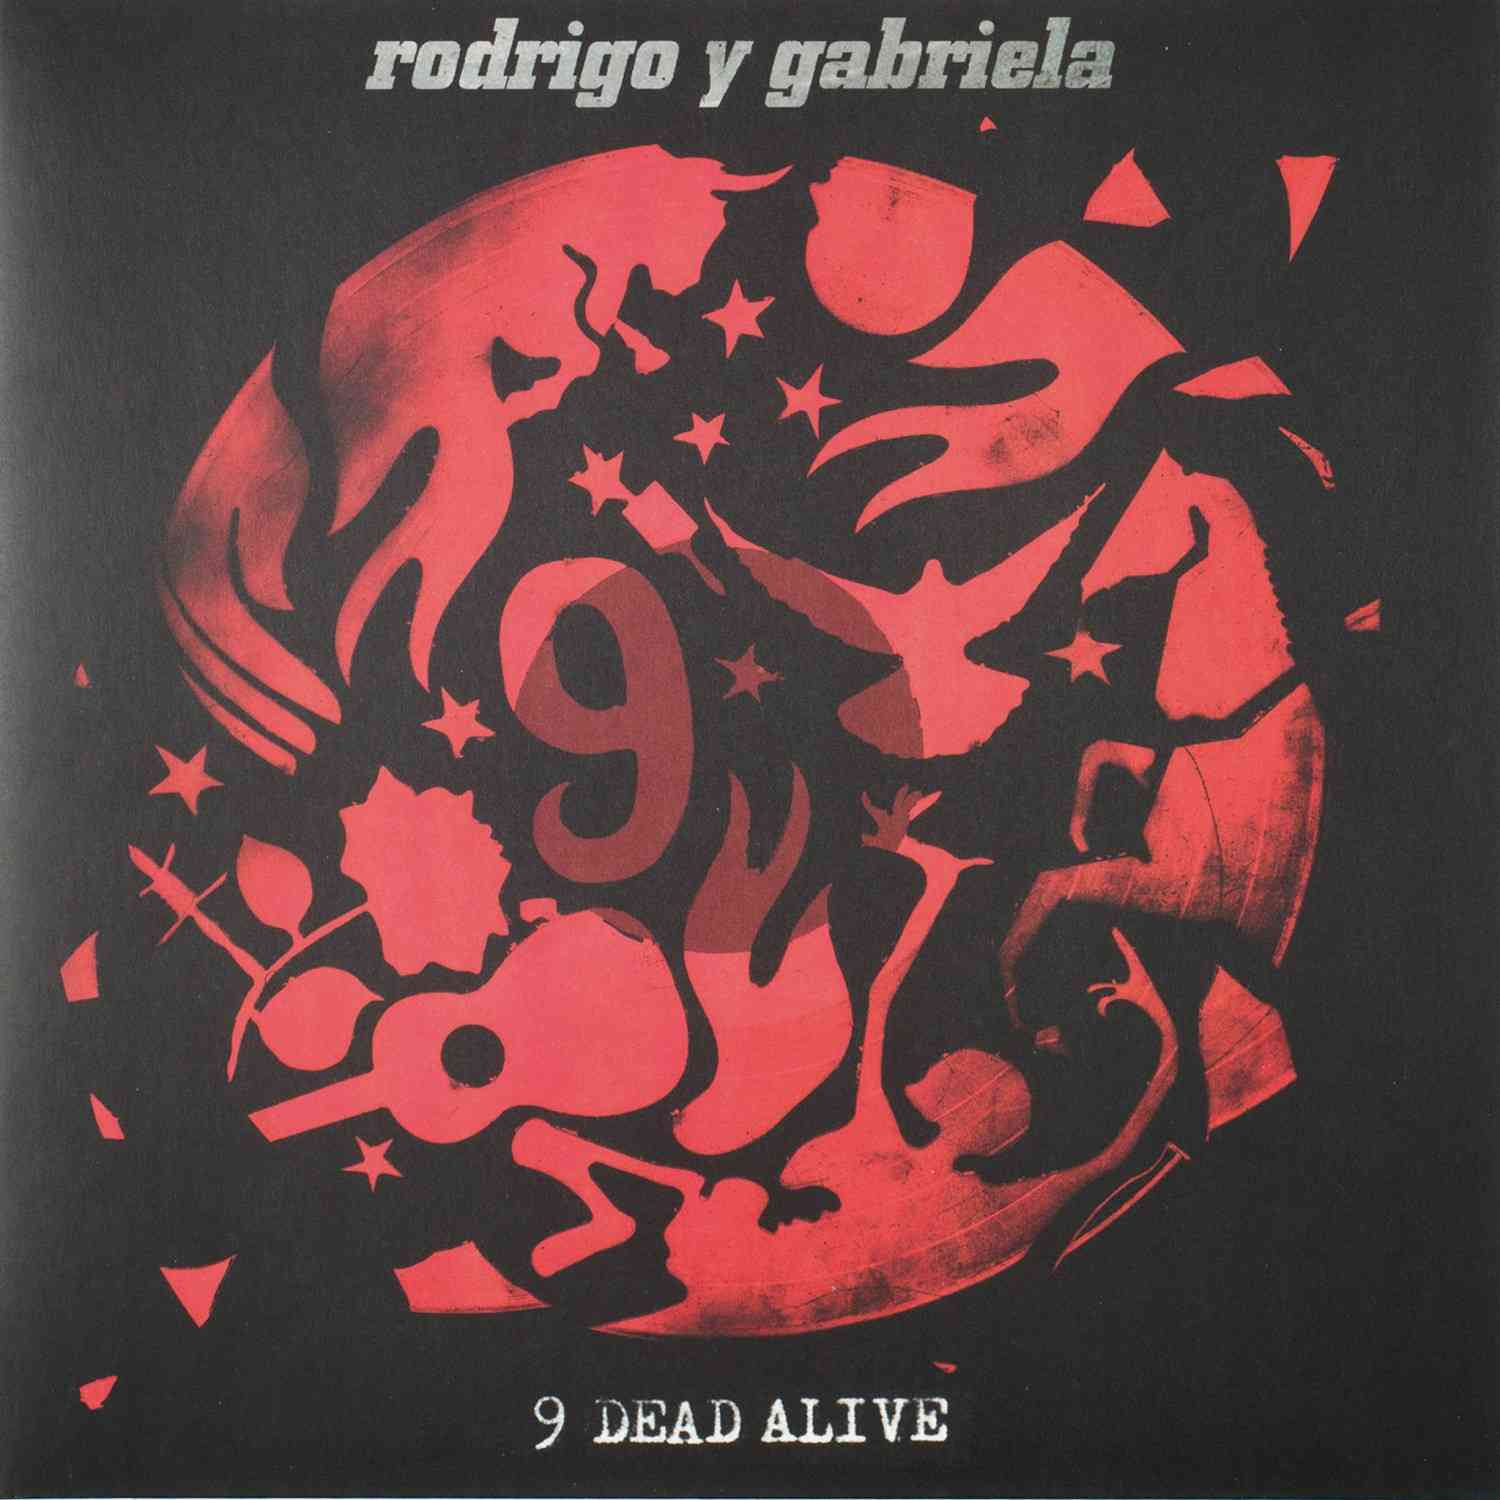 Schallplatte Rodrigo Y Gabriela - 9 Dead Alive (Rubyworks) im Test, Bild 1